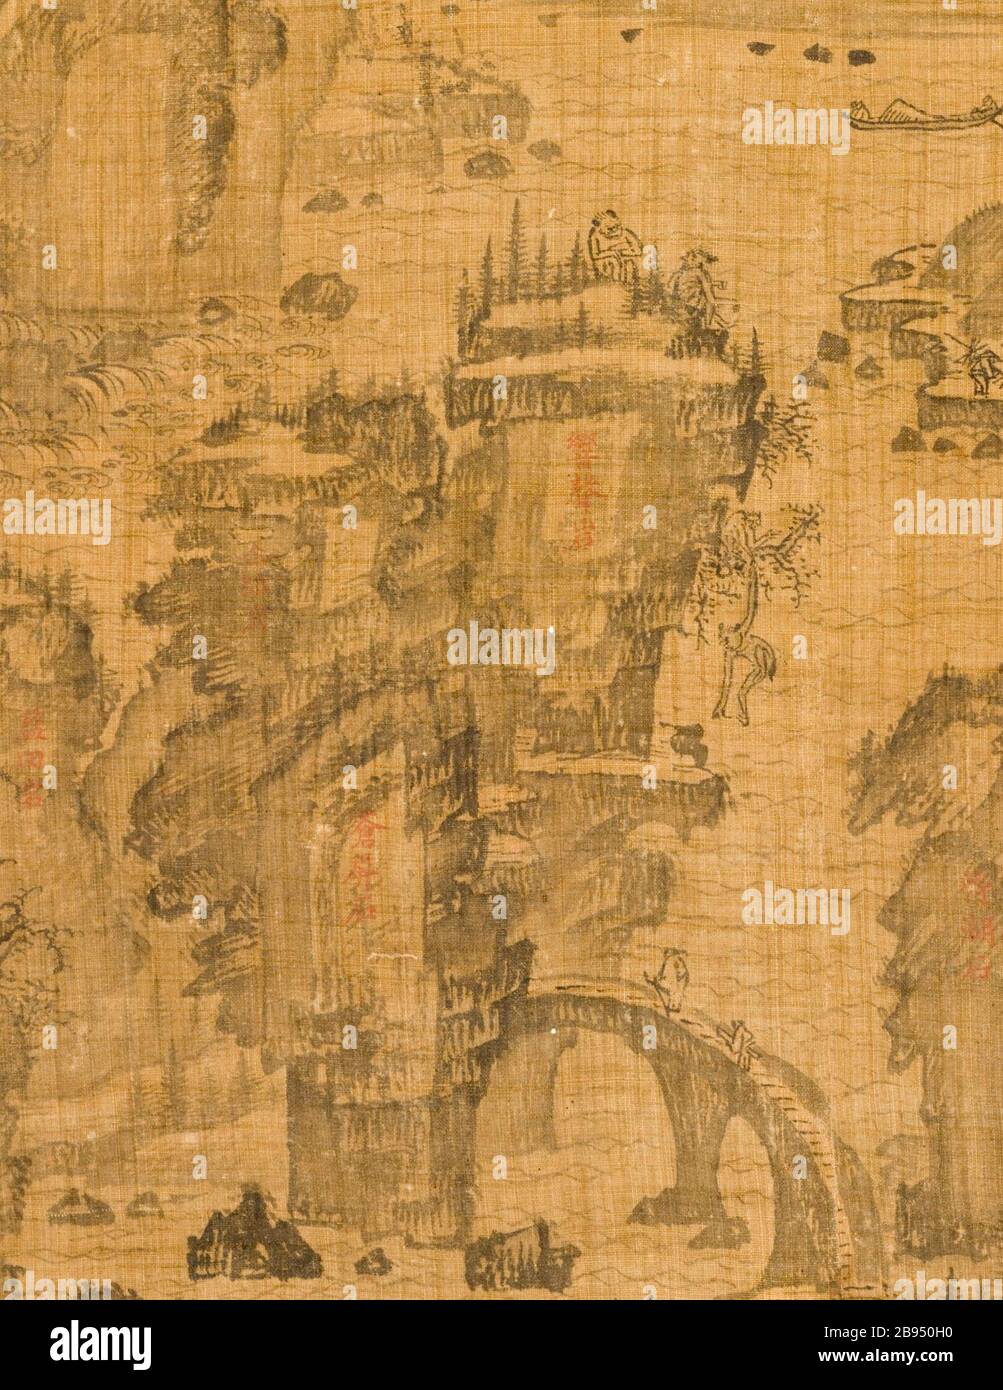 "Das Sechste der neun Biegungen am Mount Wuyi, China (Bild 3 von 5); Englisch: Korea, Koreanisch, Joseon Dynastie (1392-1910), aus dem 17. Jahrhundert Gemälde Hängerolle, Tusche auf Ramie oder Hanf Bild: 20 3/4 x 23 1/8 in. (52,71 x 58,74 cm); Montage: 48 3/4 x 25 in. (123.83 x 63,5 cm); Rolle: 27 1/4 in. (69.22 cm) mit Museum Mittel (M. 2000.15.20) koreanischer Kunst gekauft; 17. Jahrhundert Datum QS: P 571, +1650-00-00 T00:00:00Z/7;". Stockfoto